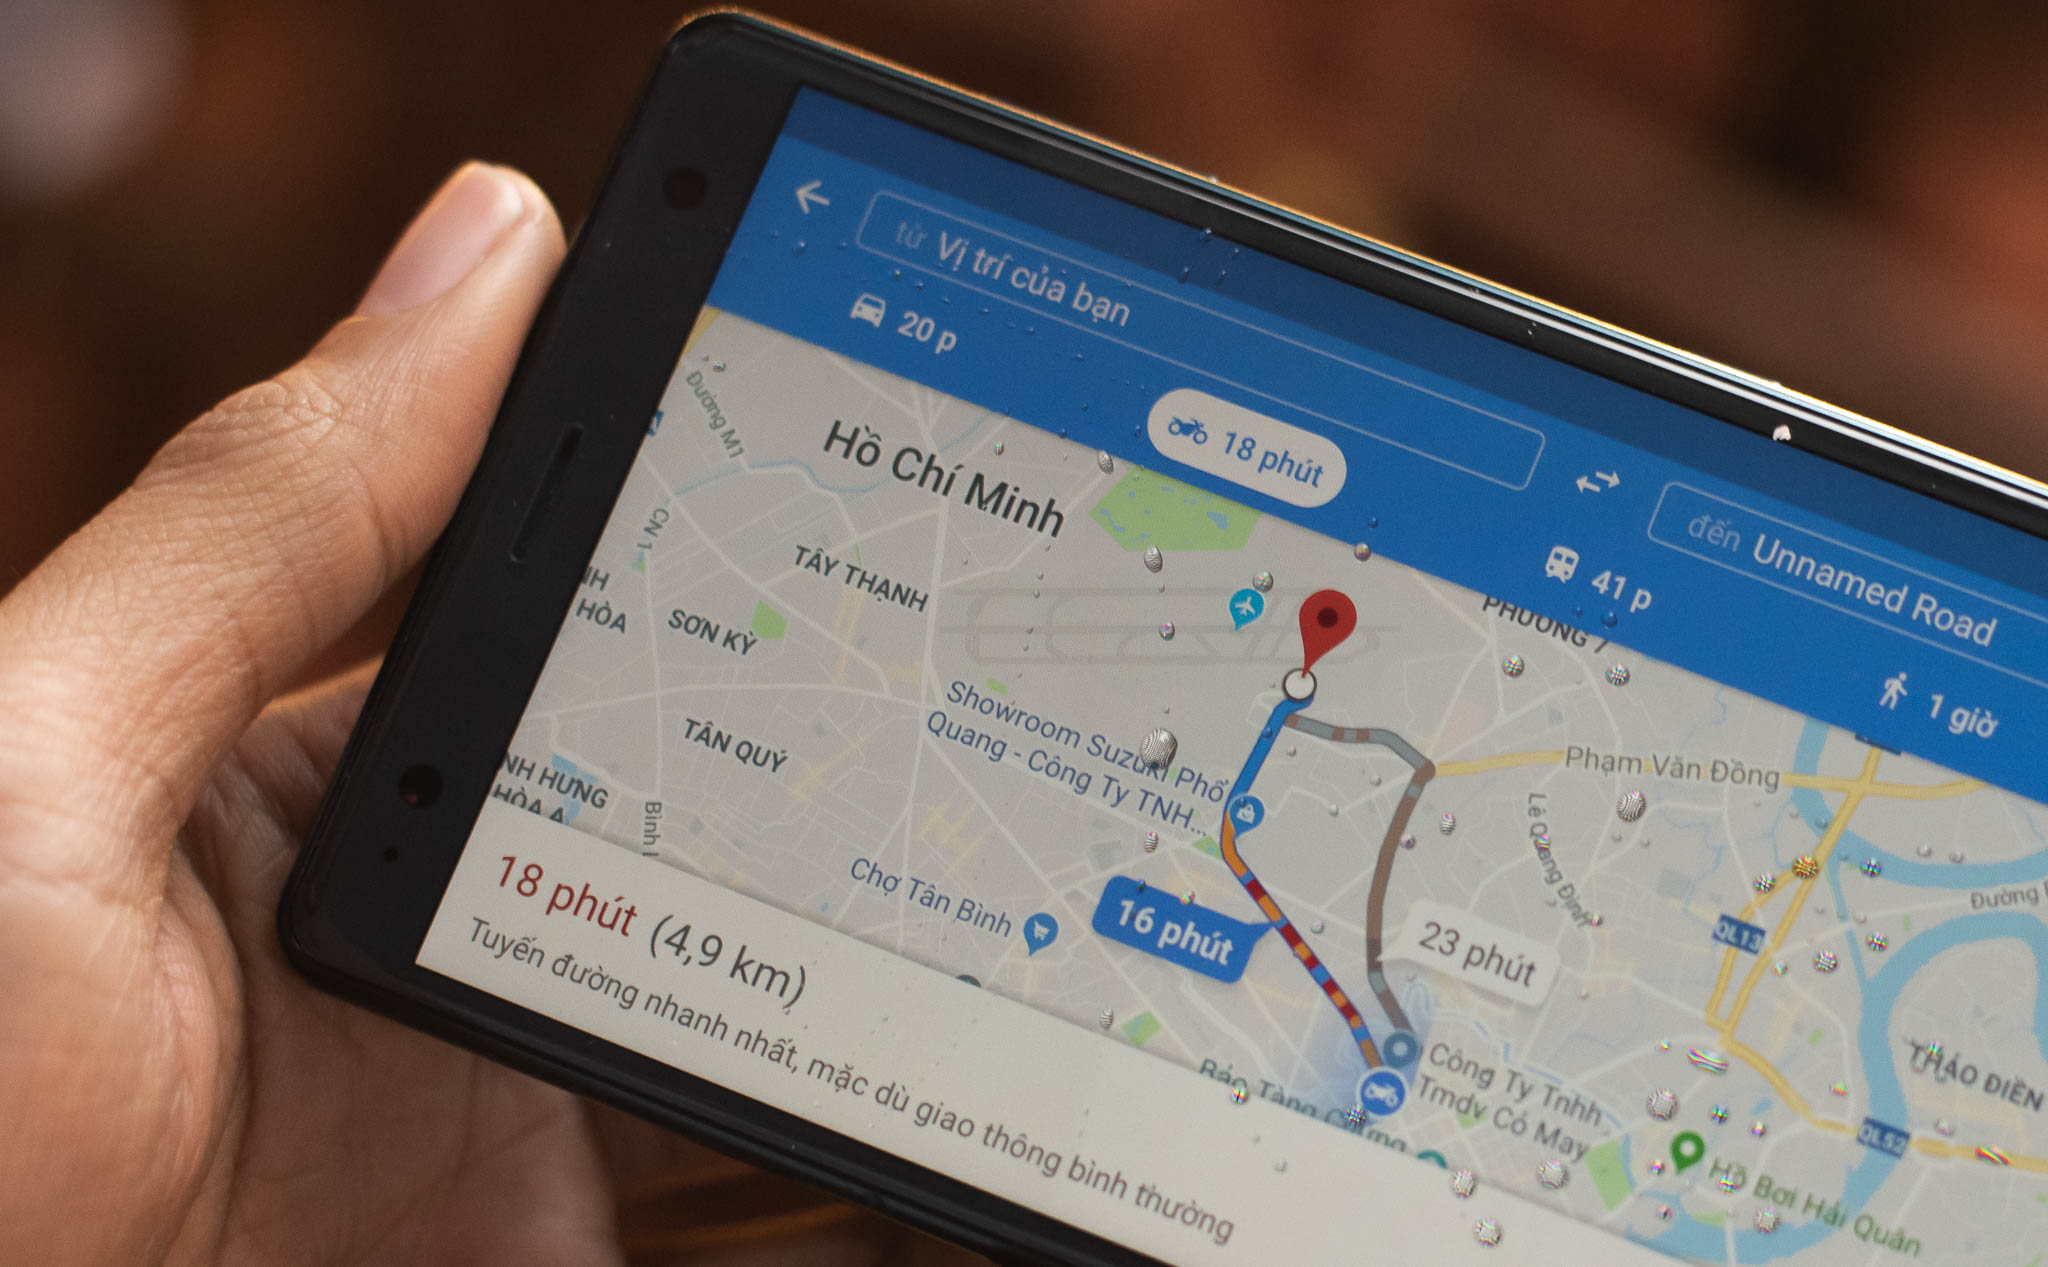 Google Maps cho xe máy: Google Maps đã được nâng cấp để hỗ trợ đường đi cho xe máy, giúp người dùng duyệt tìm thông tin địa điểm và định vị nhanh chóng và chính xác. Nhờ đó, người dùng sẽ dễ dàng điều khiển xe mà không gặp rắc rối.